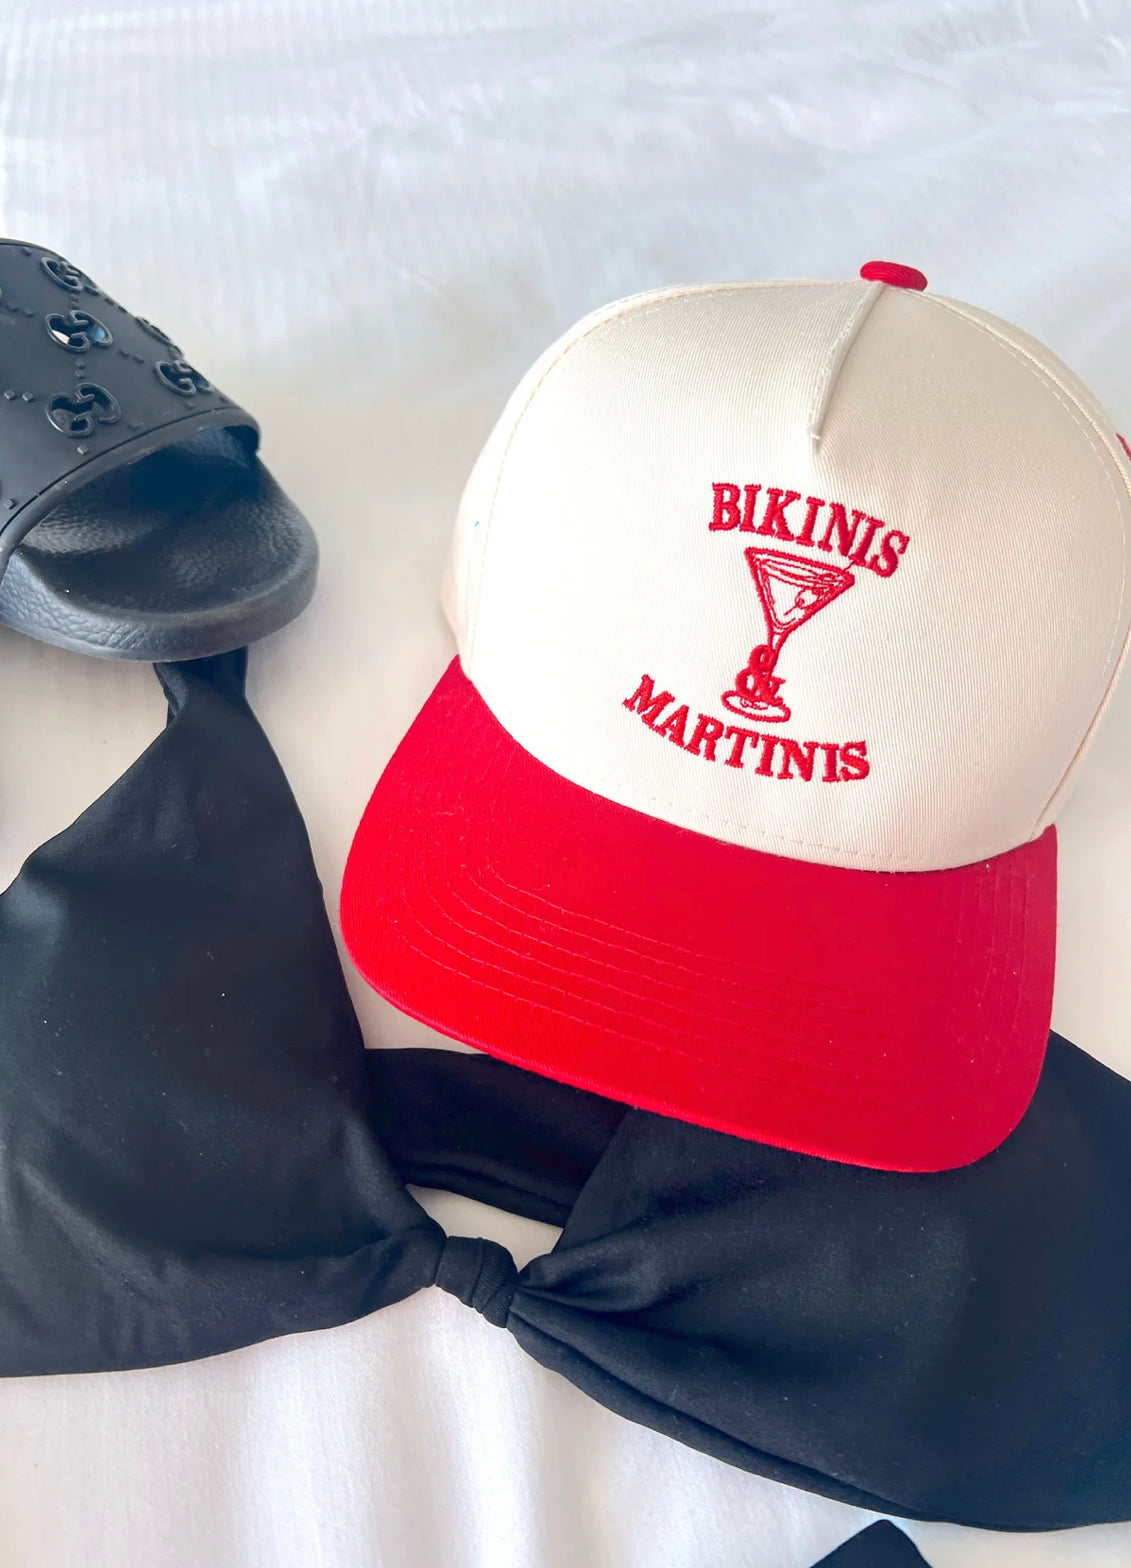 “Bikinis Martinis” Red Trucker Hat